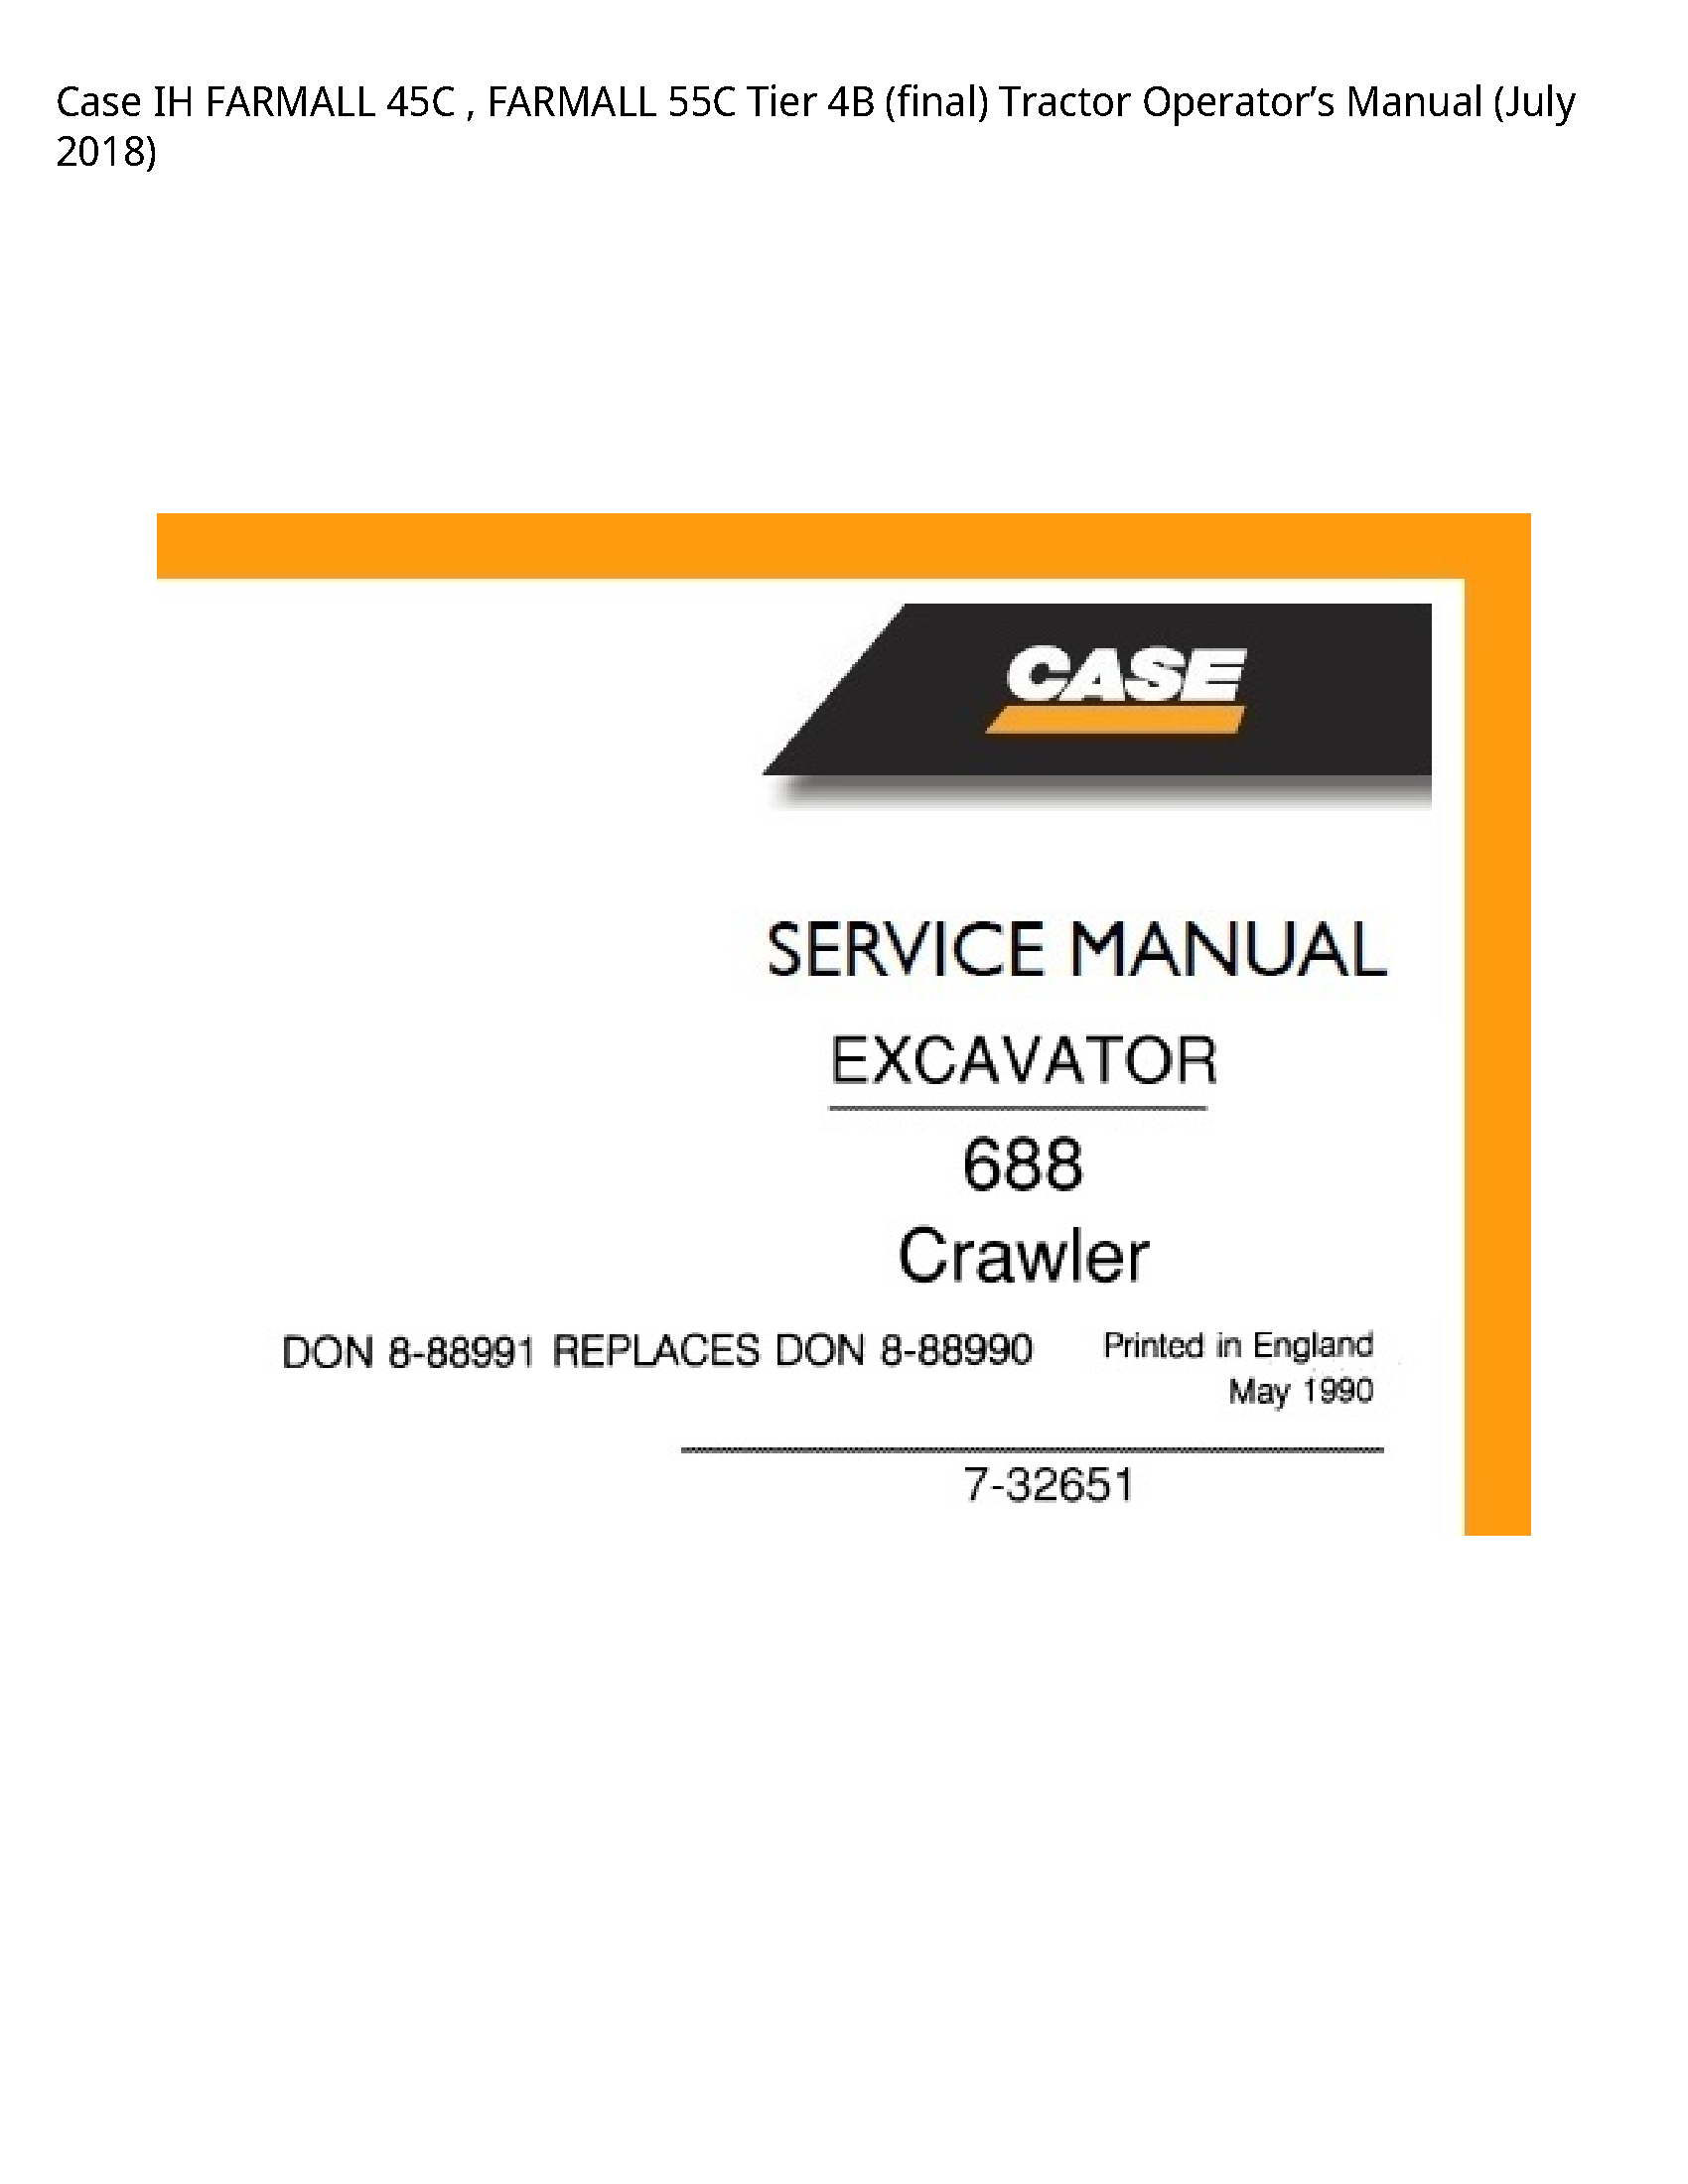 Case/Case IH 45C IH FARMALL FARMALL Tier (final) Tractor Operator’s manual